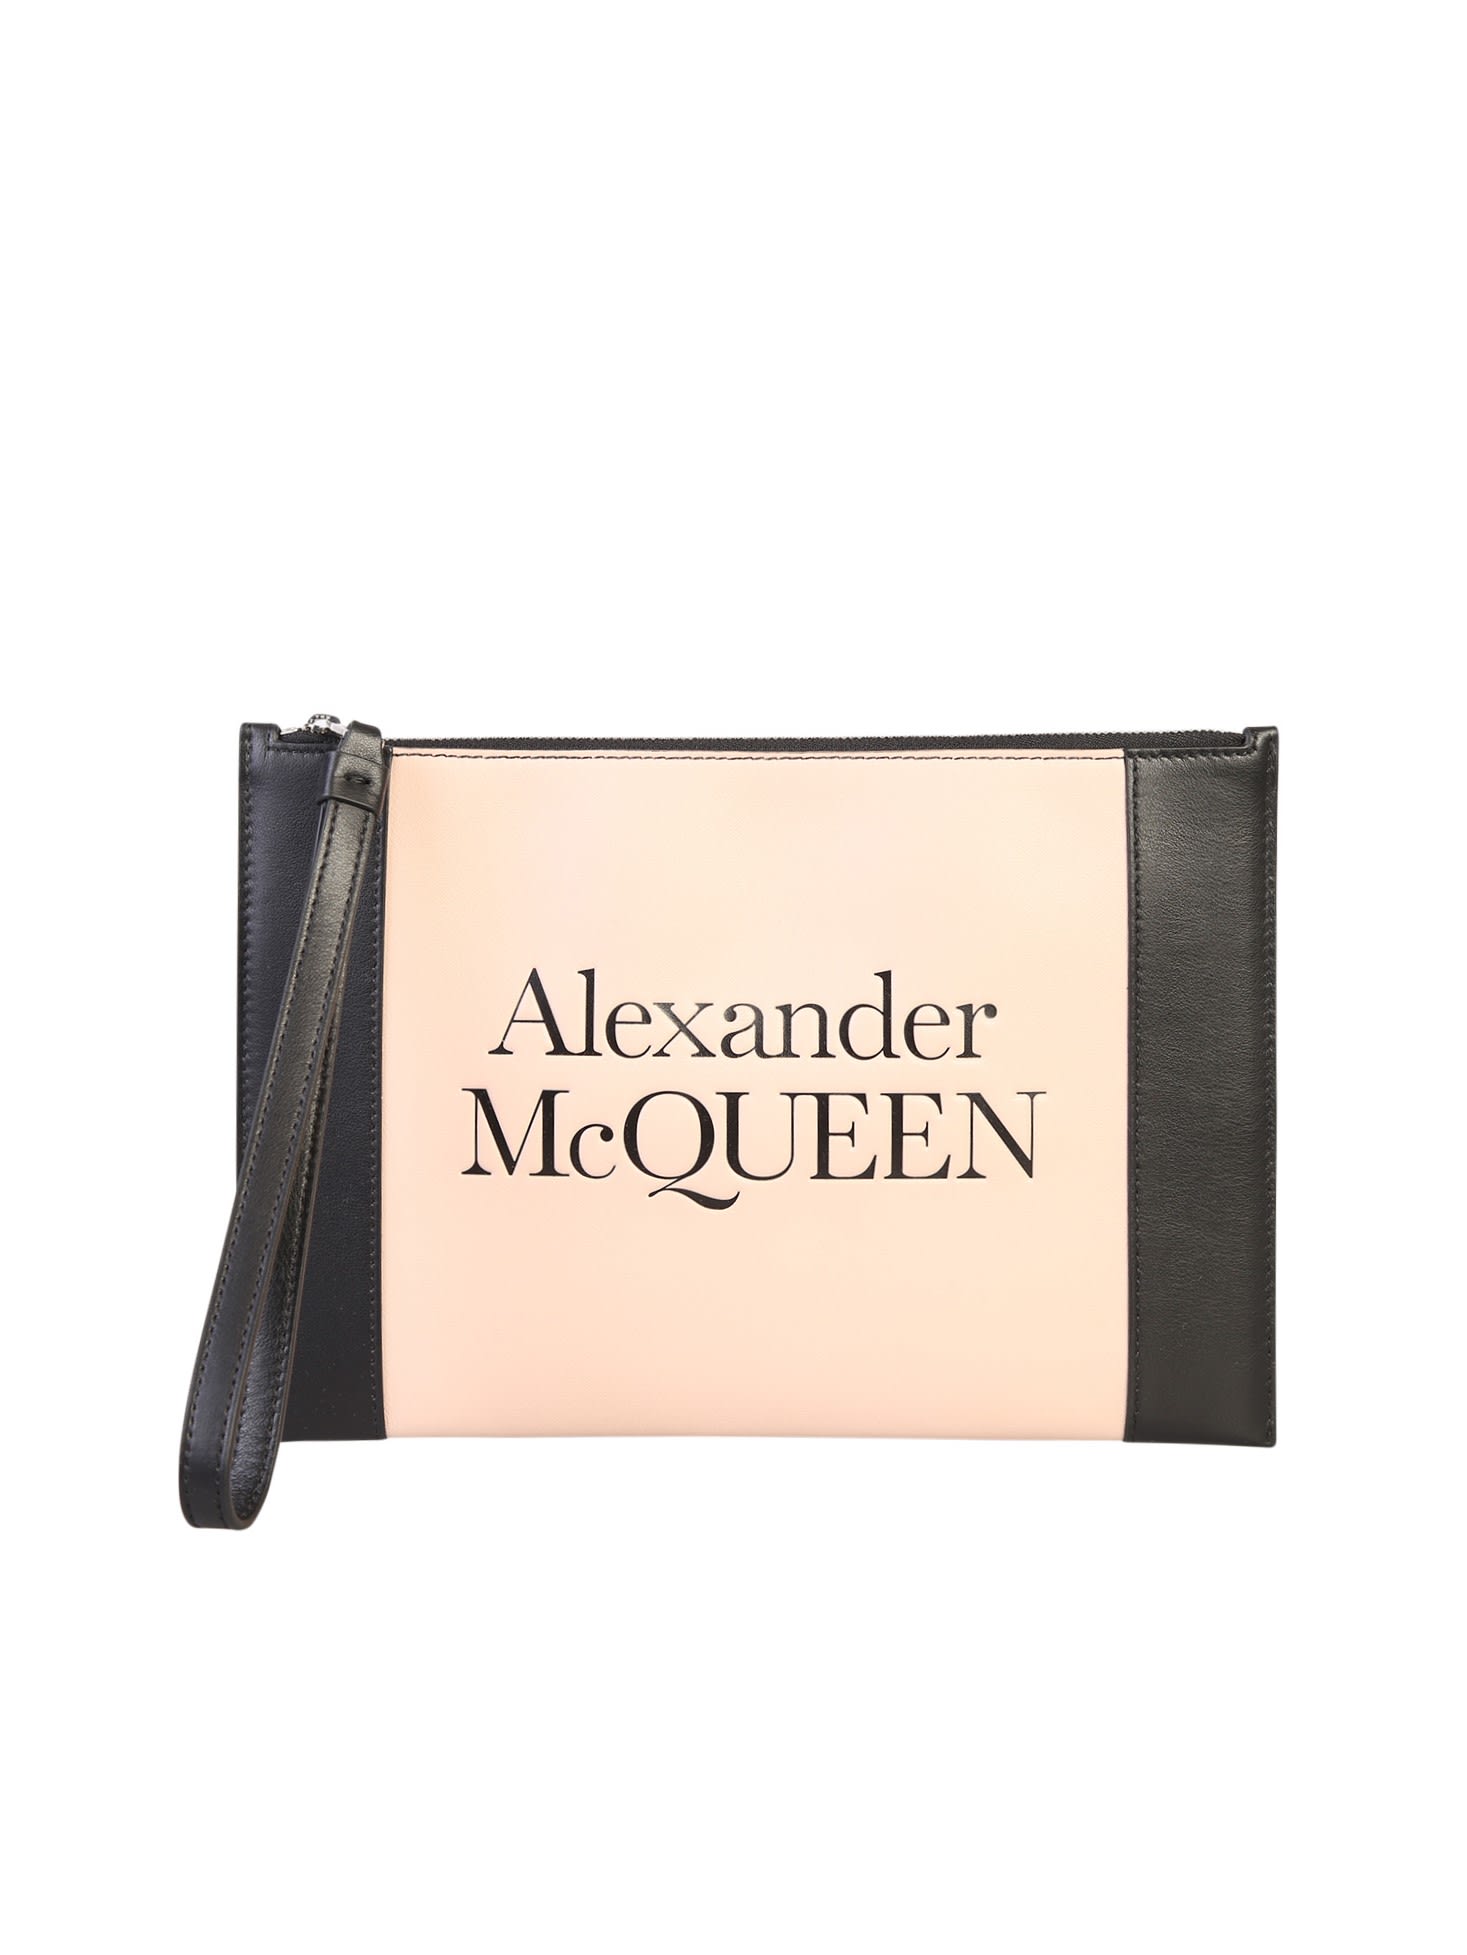 Alexander McQueen Zipped Clutch